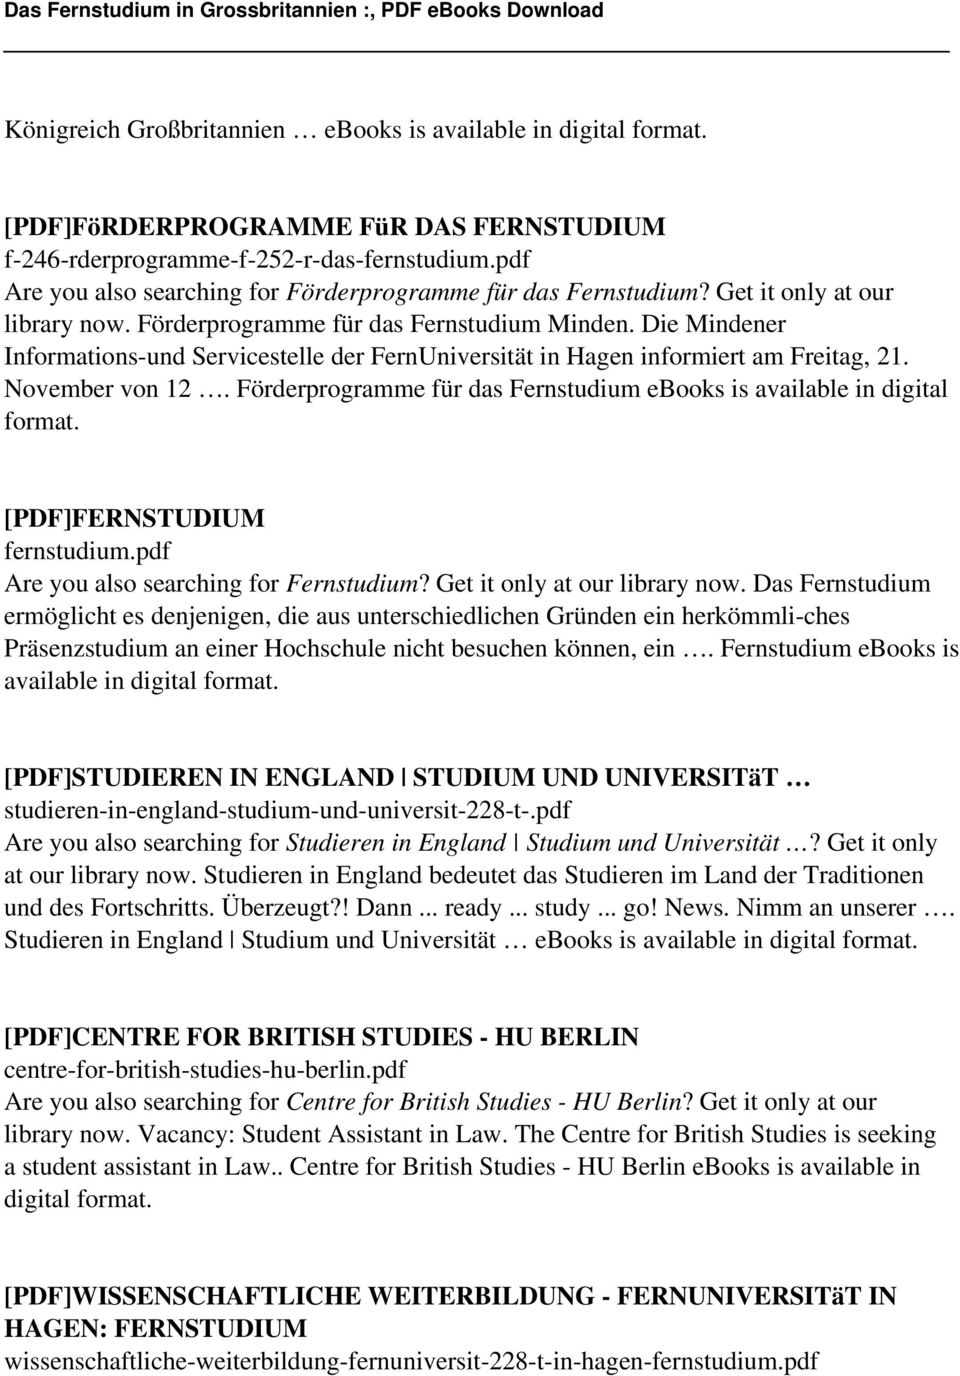 Die Mindener Informations-und Servicestelle der FernUniversität in Hagen informiert am Freitag, 21. November von 12. Förderprogramme für das Fernstudium ebooks is available in digital format.